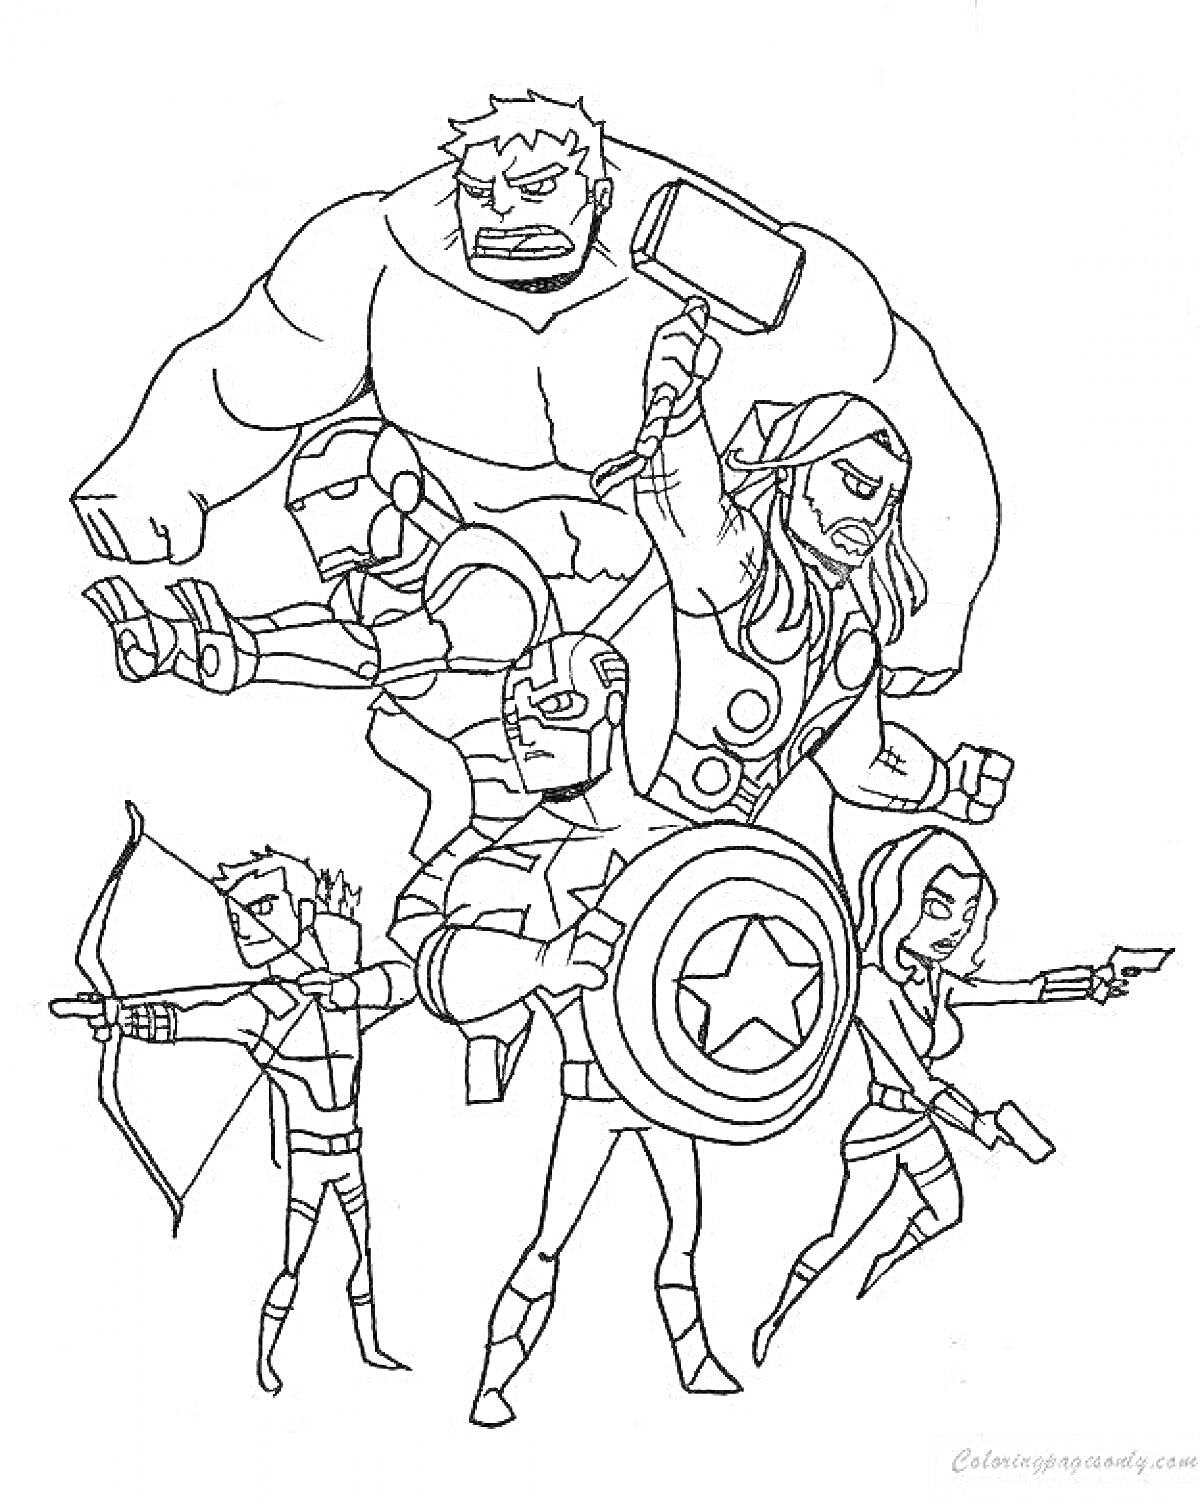 Раскраска Супергерои Мстители: зеленый персонаж, человек в костюме с шлемом, человек с молотом, персонаж с щитом, лучник, персонаж с пистолетом